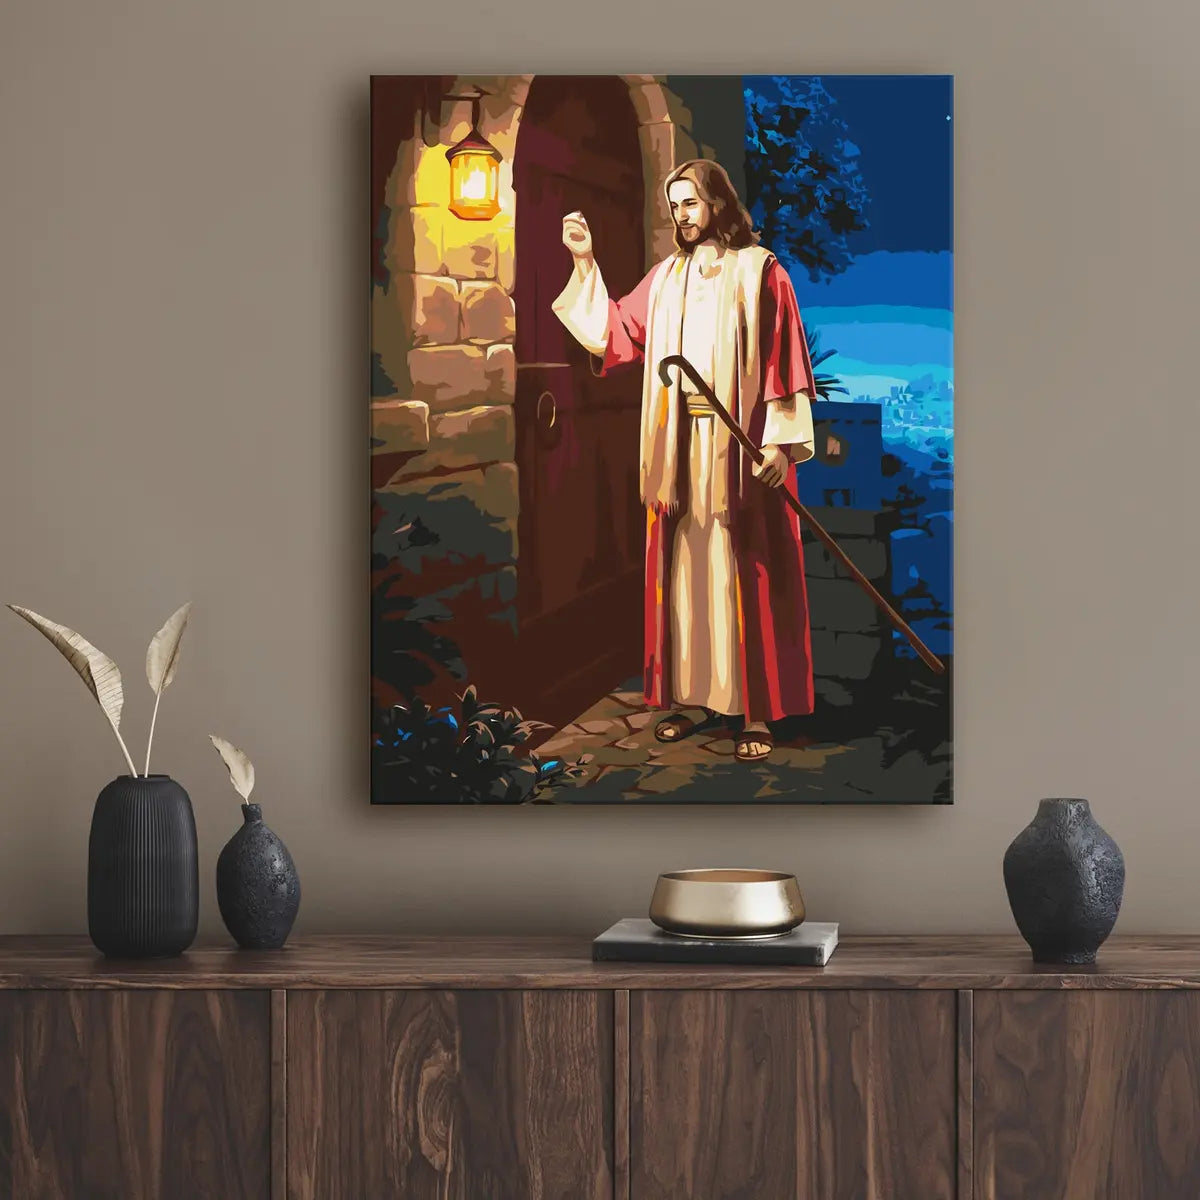 Ježíšek klepe na dveře